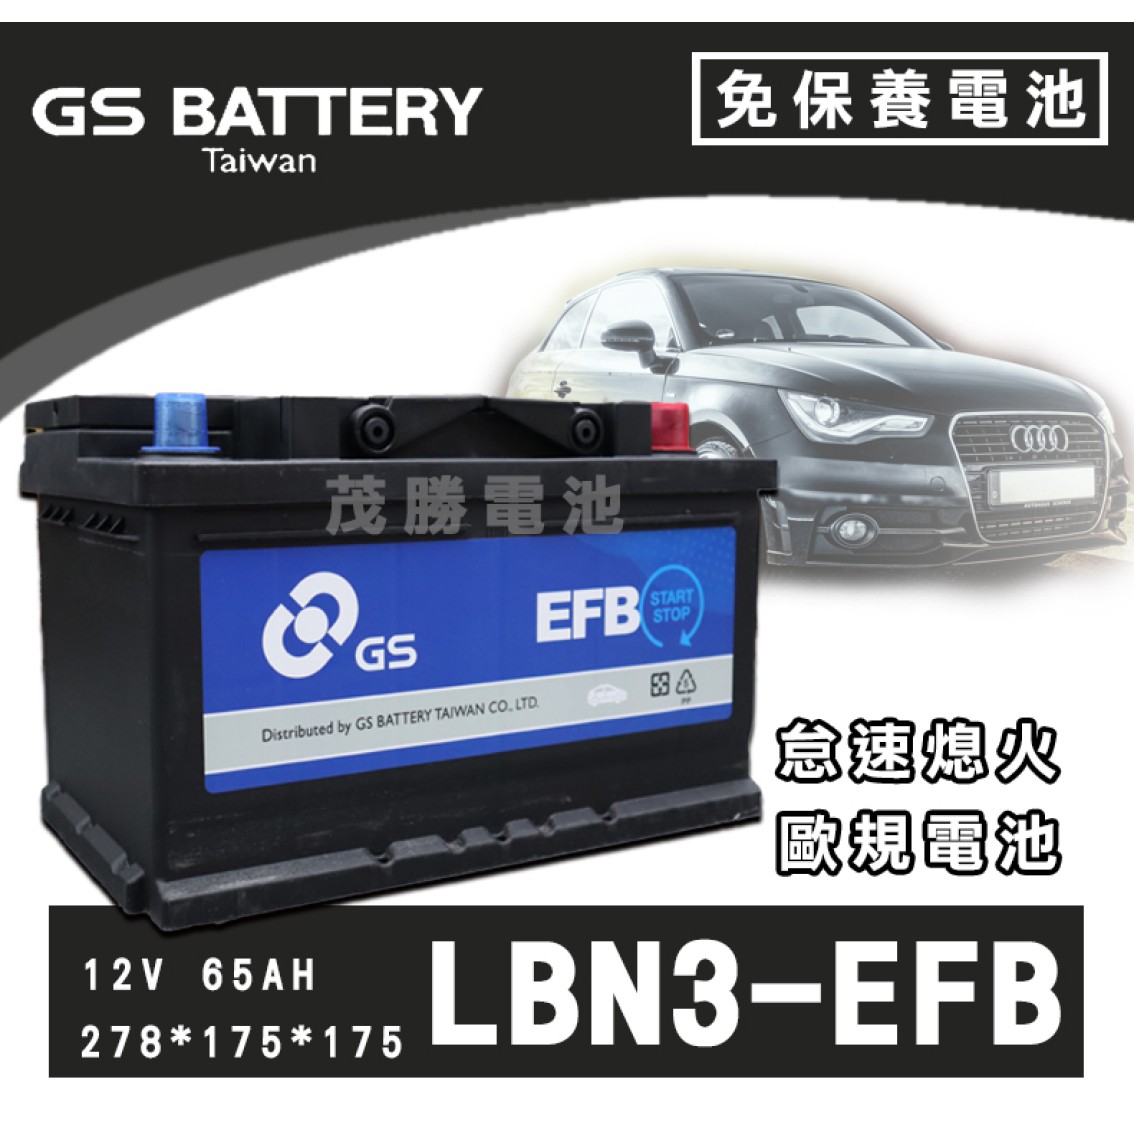 LBN3-EFB